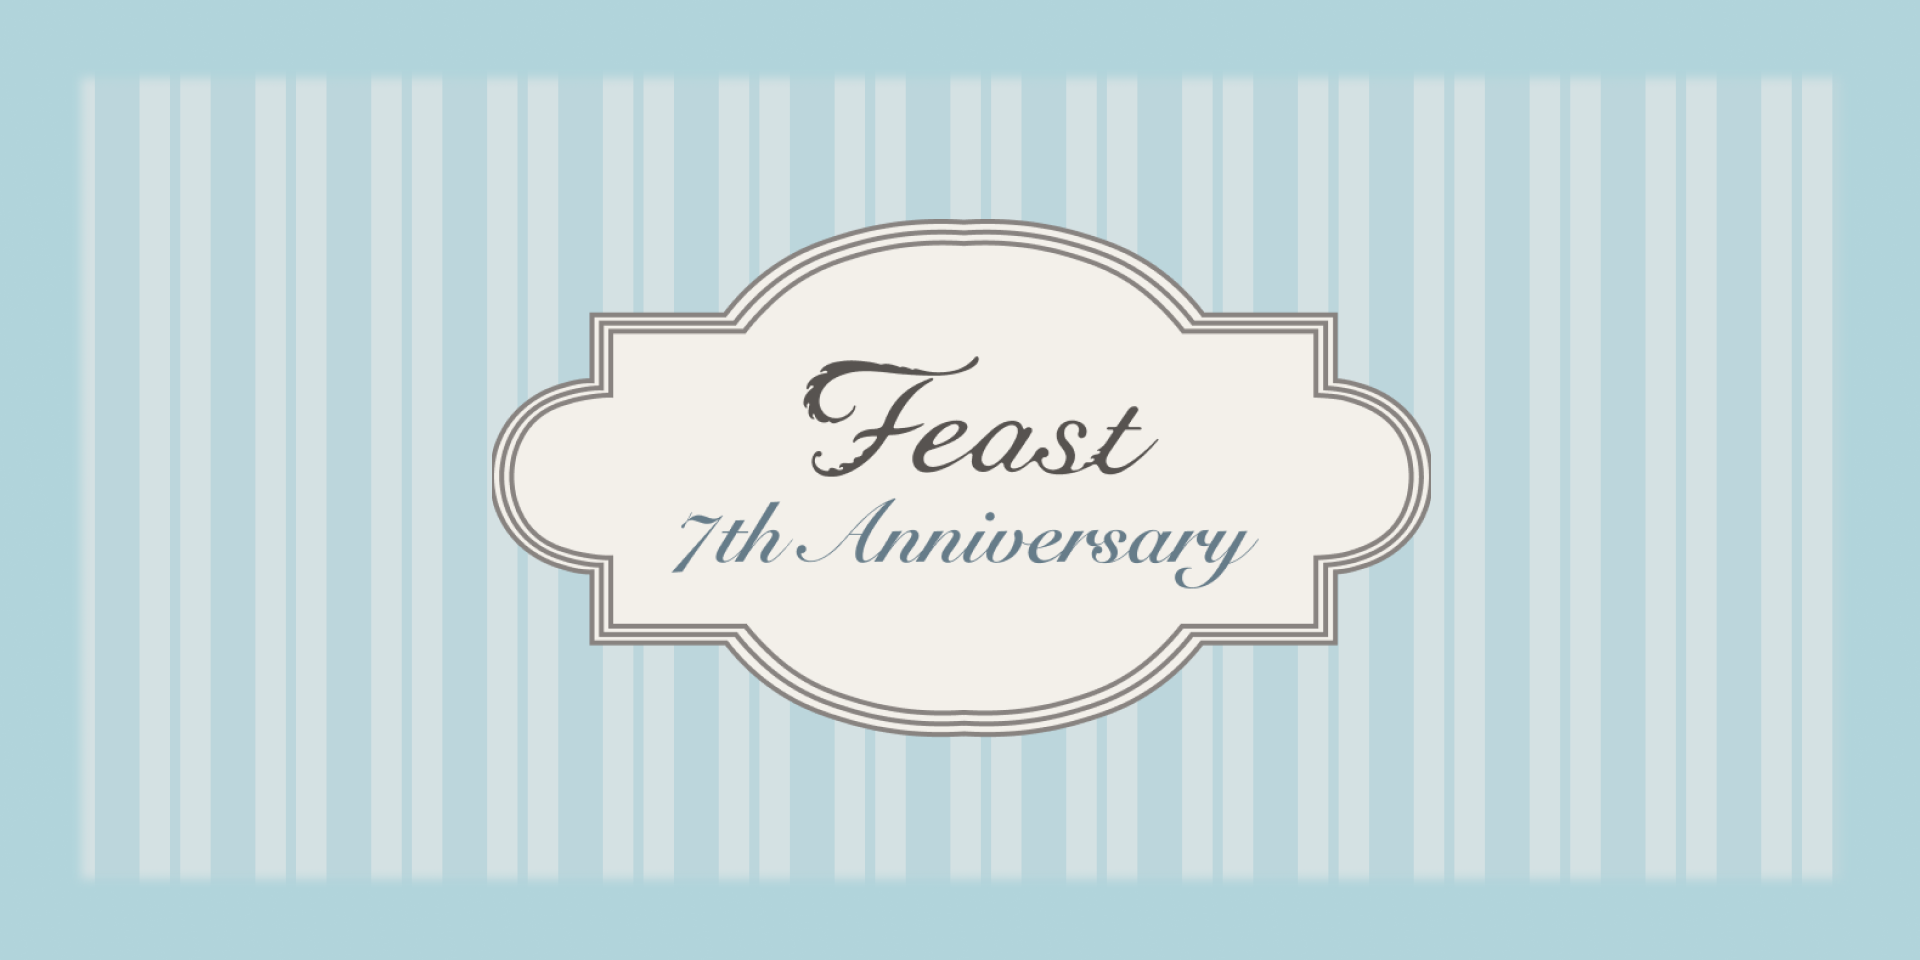 feast 7th anniversary Fair開催！【8月6日(金)20:00〜15日(日)23:59】